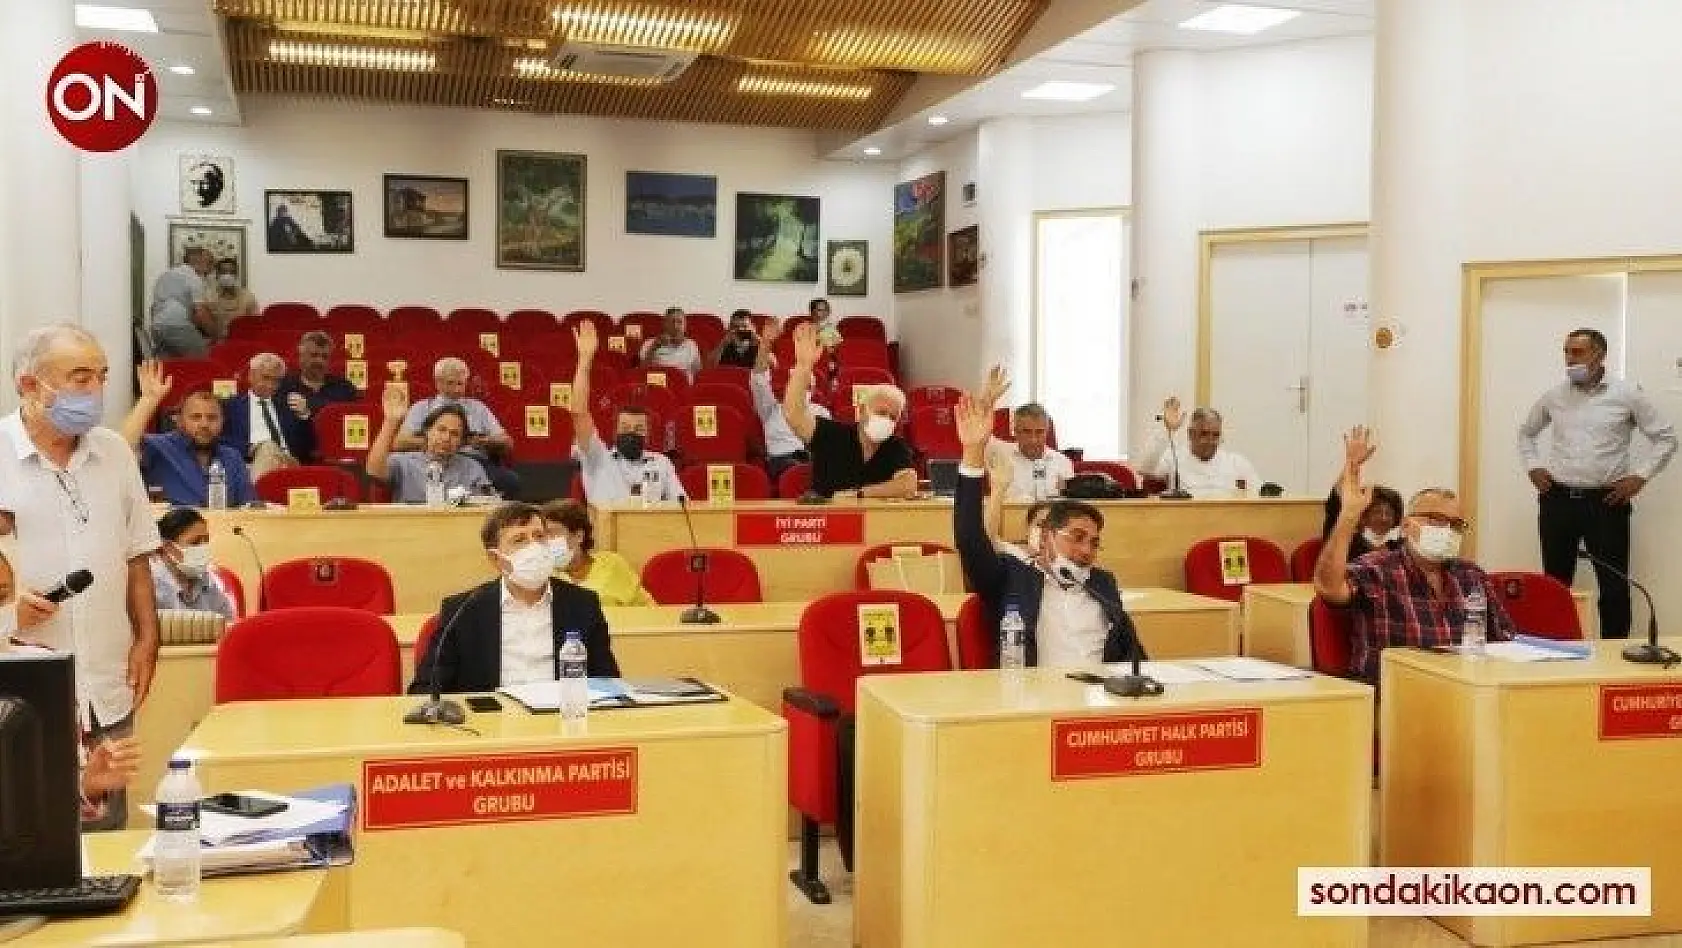 Burhaniye Belediyesi pandemide kiracılarına destek oldu